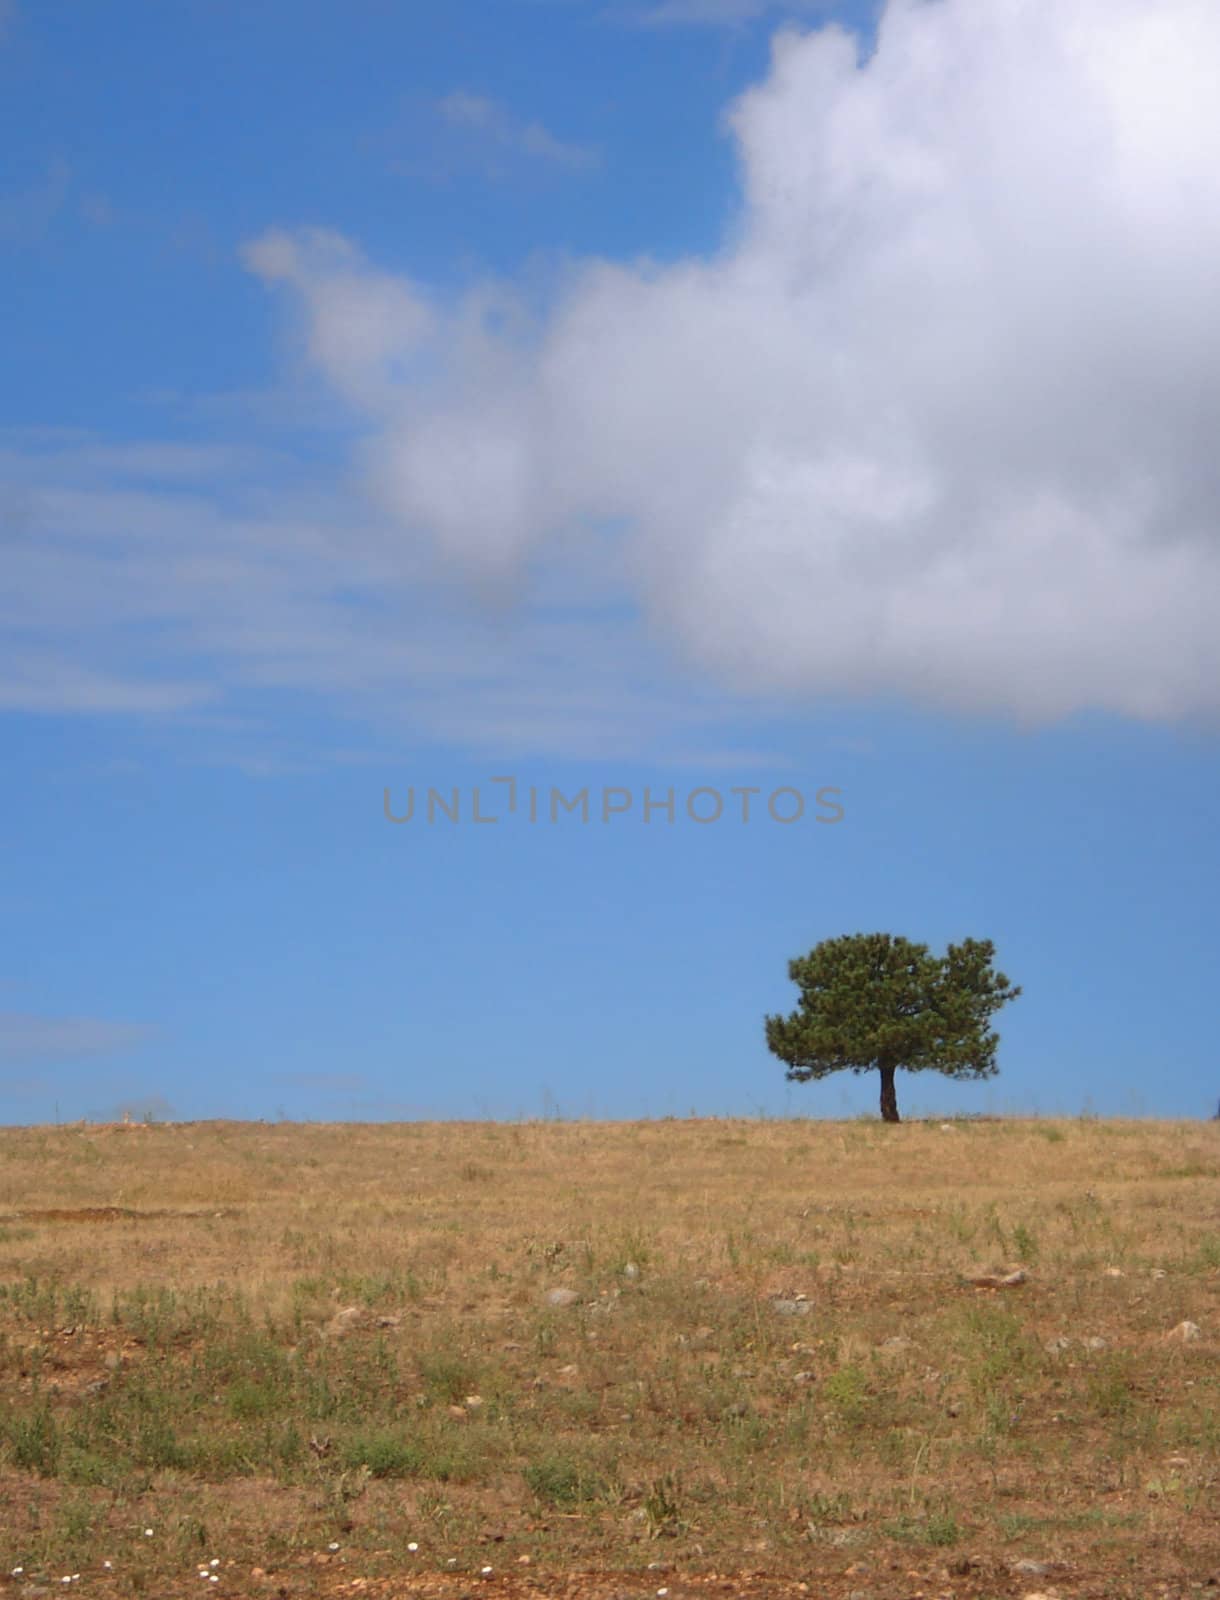 Single Tree in a Field by gilmourbto2001